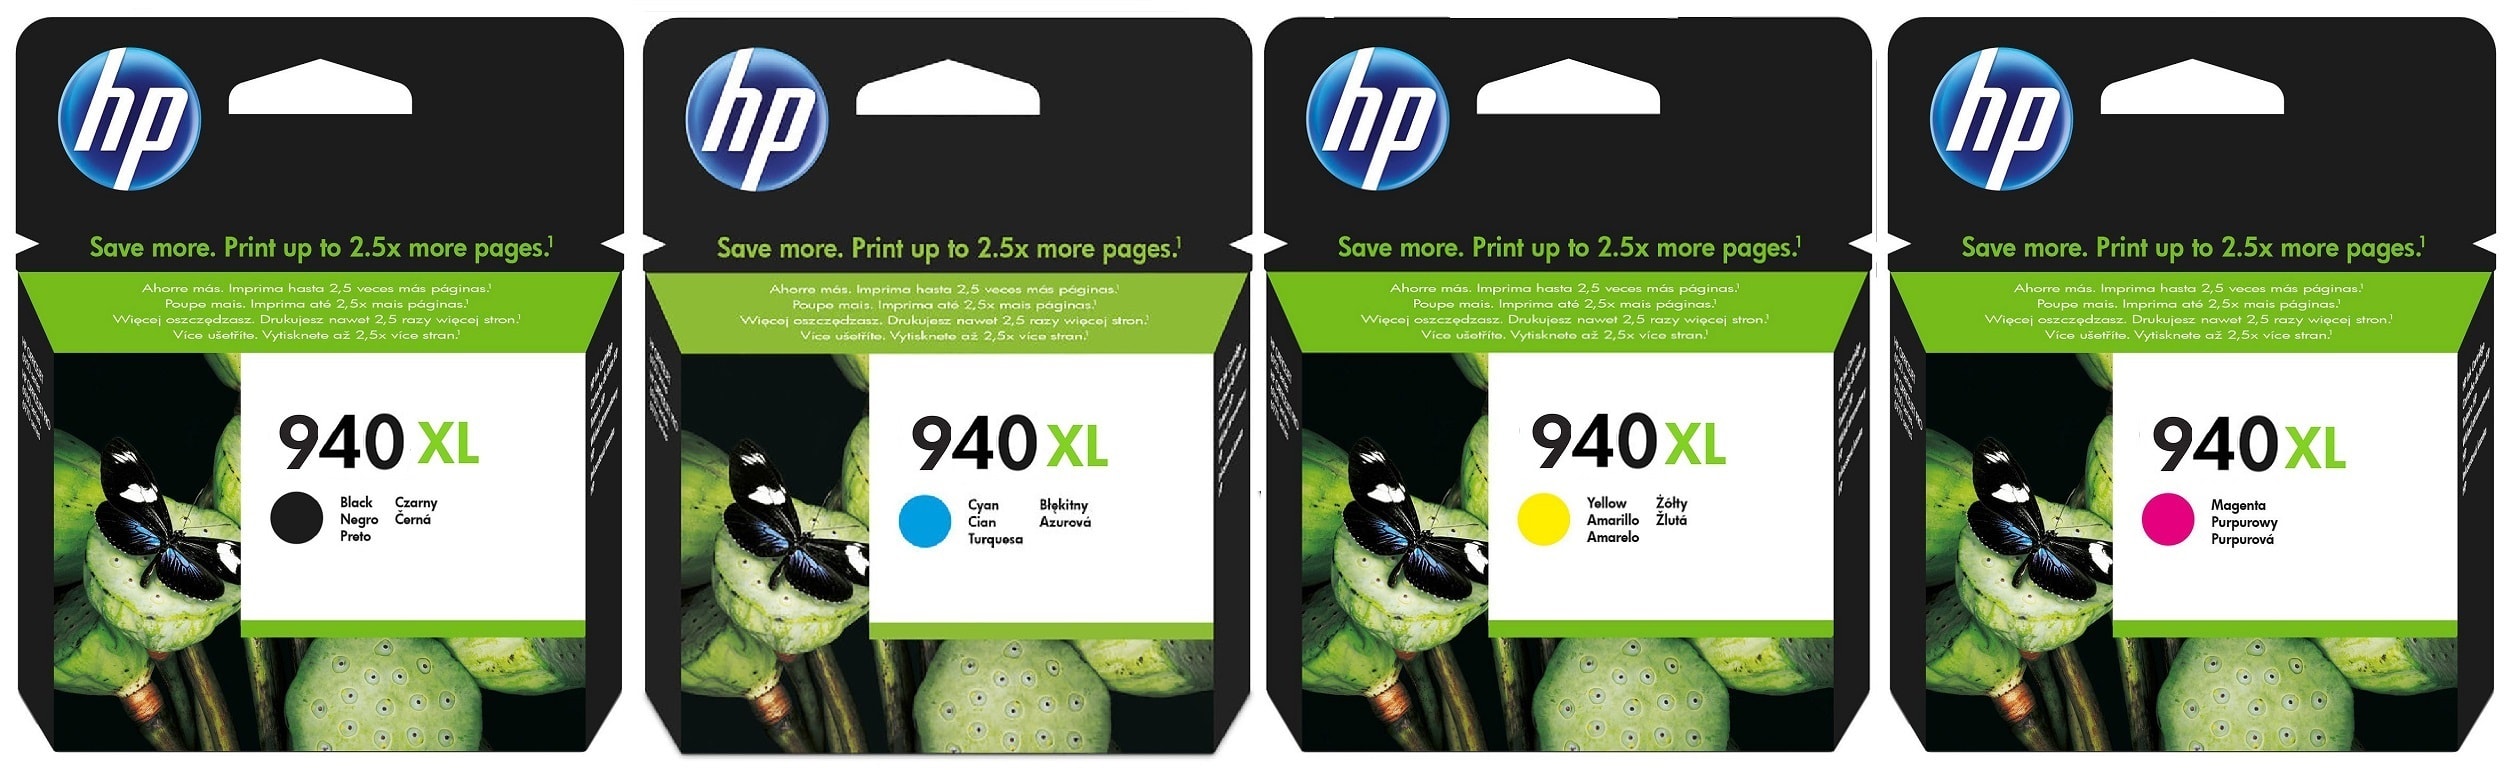 Картриджи hp 940xl для HP Officejet Pro 8000. Купить комплект оригинальных картриджей.